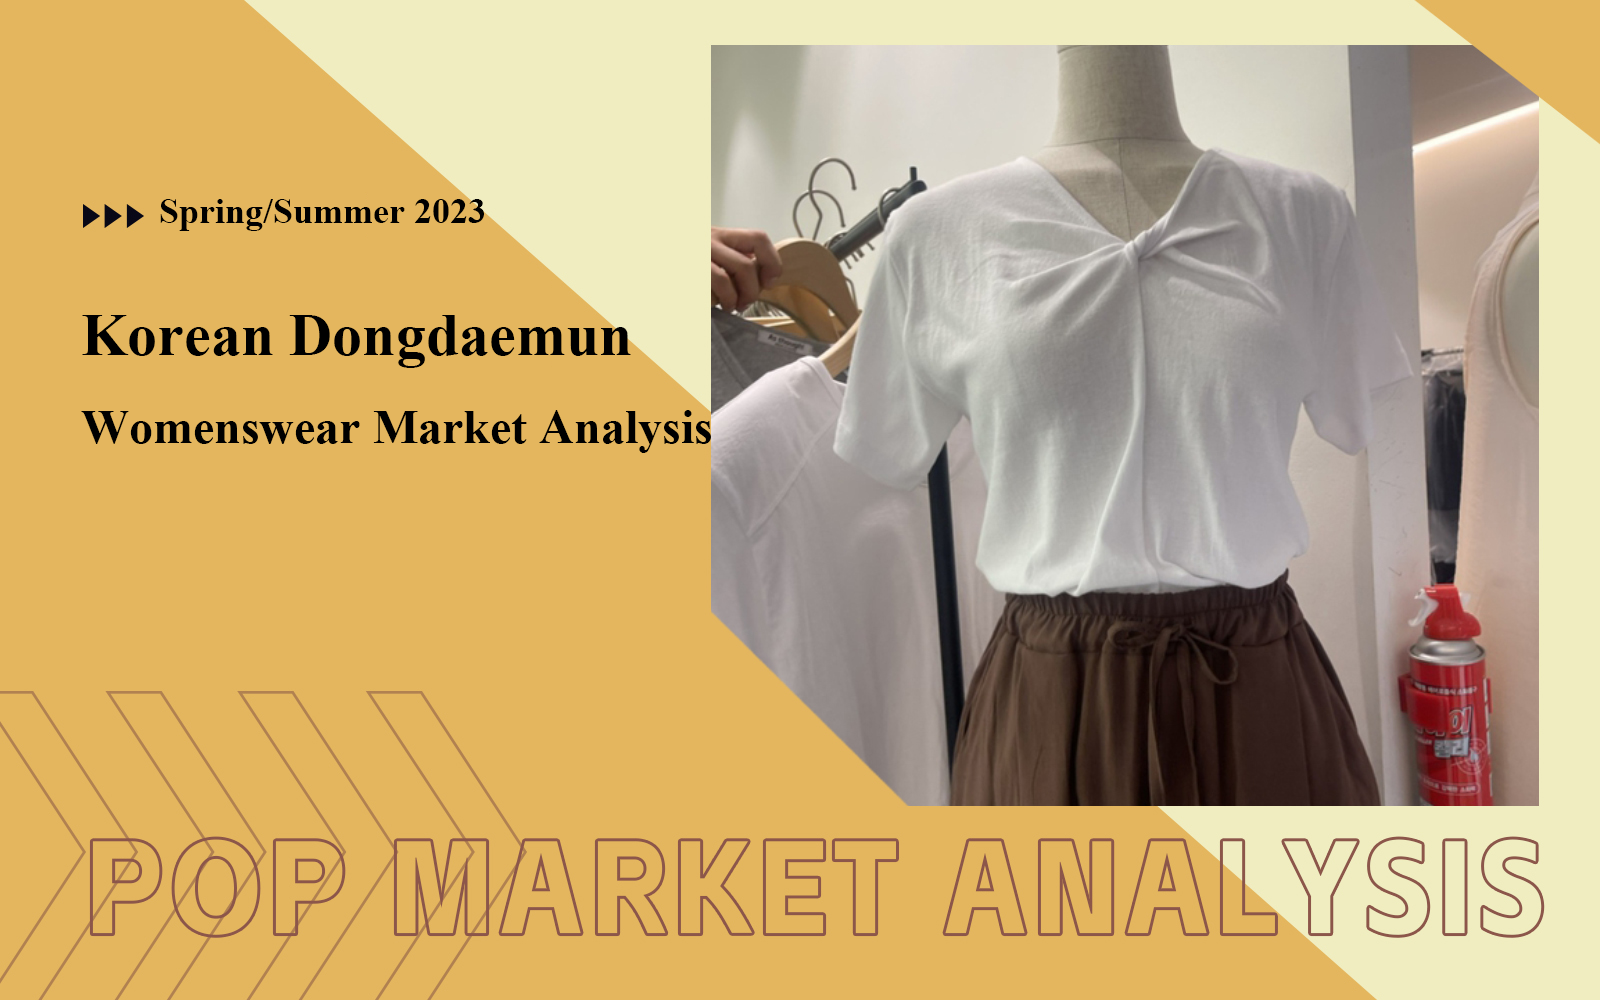 May 2023 -- The Womenswear Market Analysis of Korean Dongdaemun